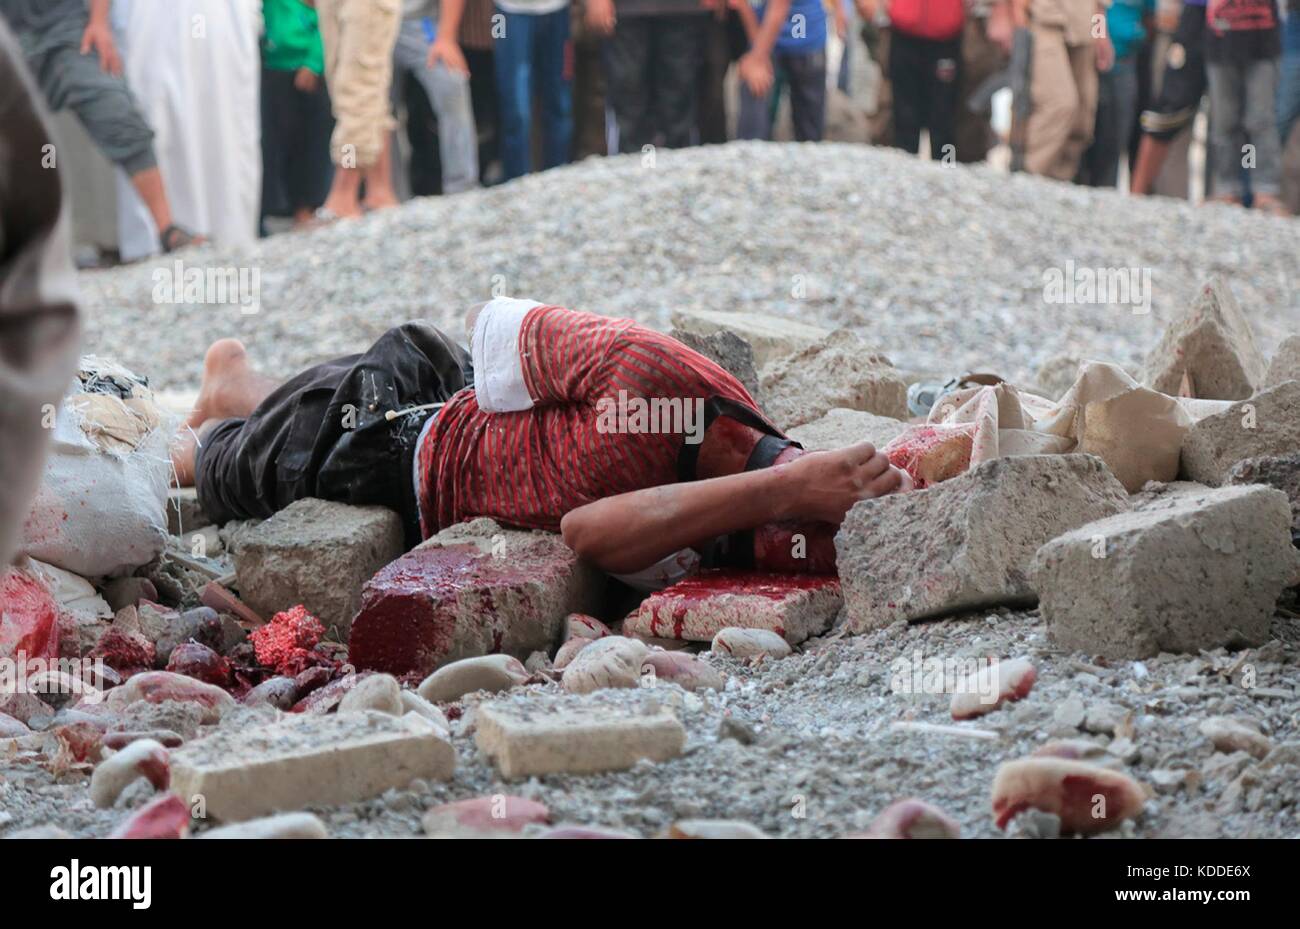 Nota a los editores: el contenido gráfico. datadas isis imagen propagandística mostrando un hombre muerto por lapidación por sodomía durante una ejecución pública en raqqa, Siria. Foto de stock